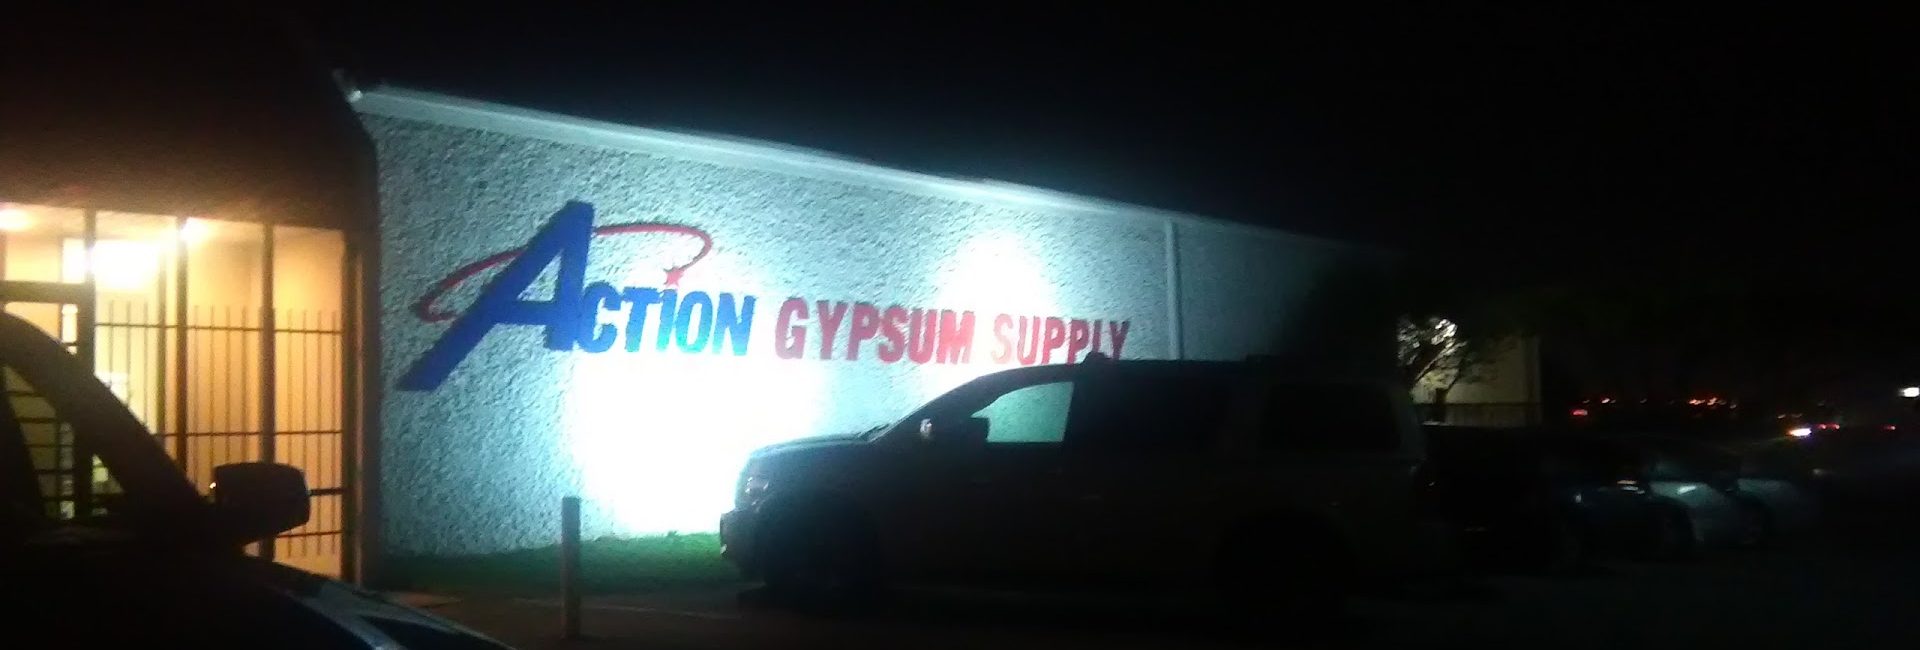 Action Gypsum Supply 3